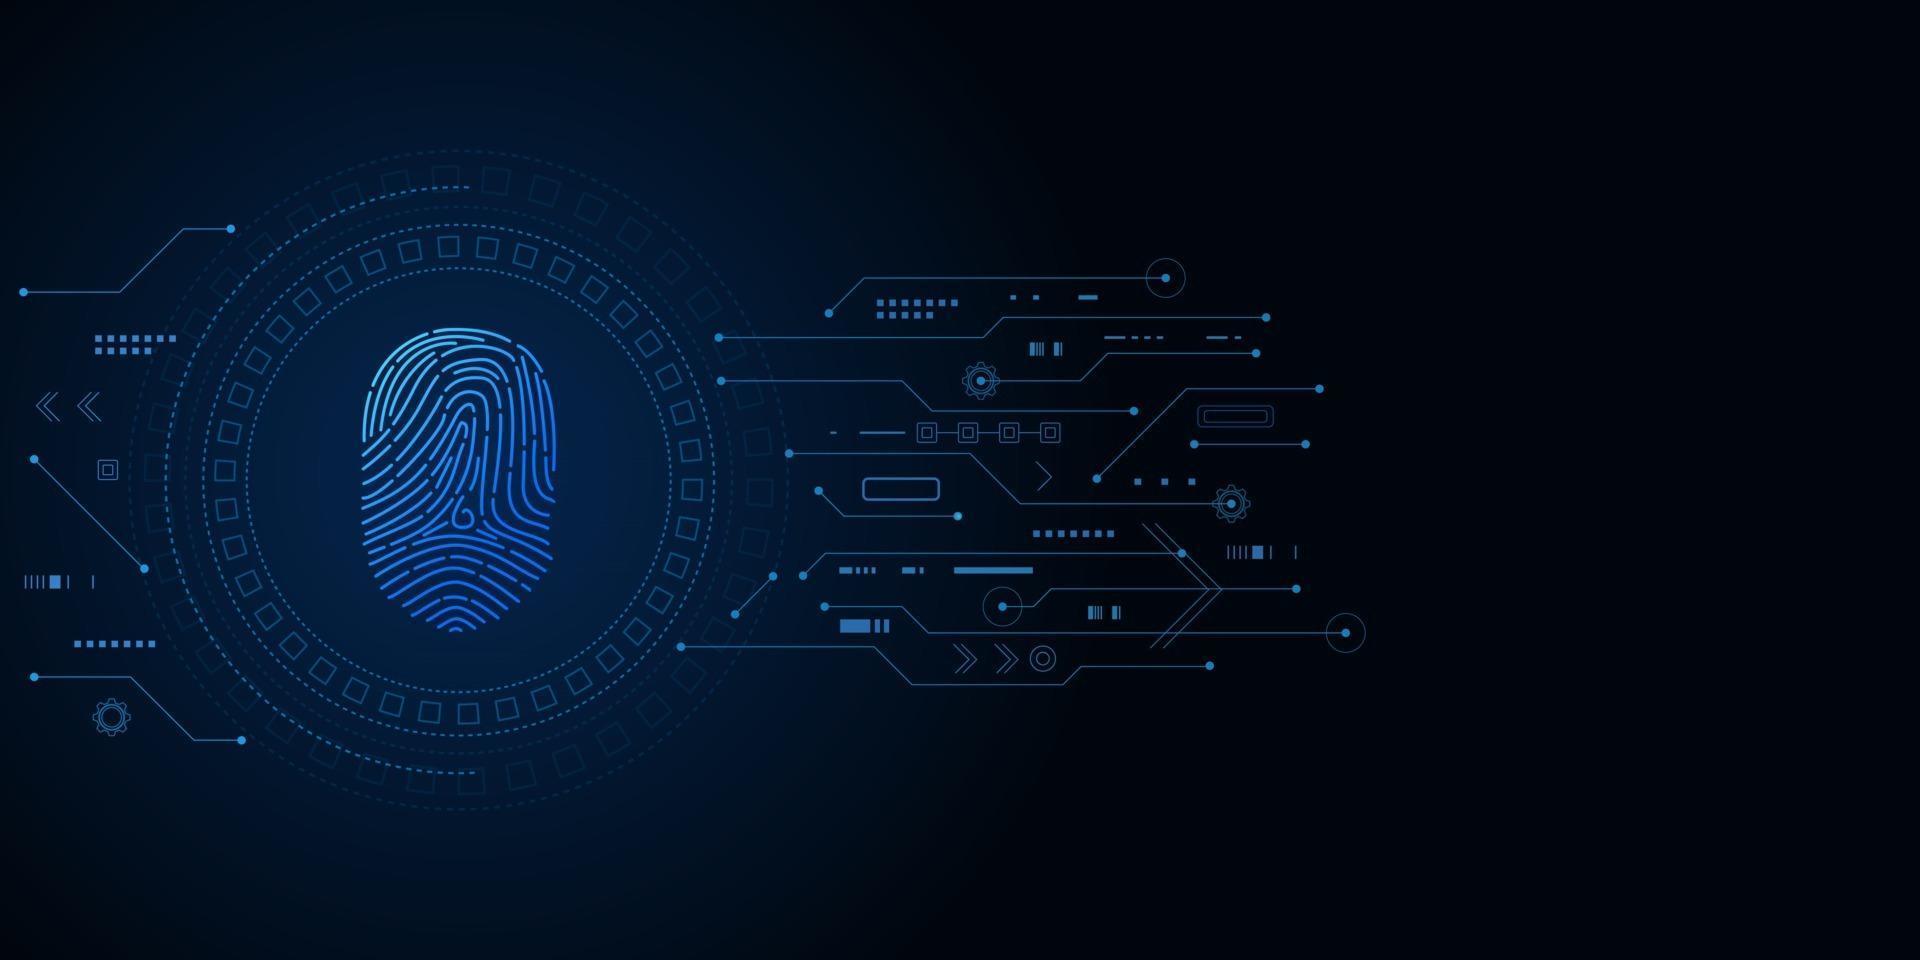 scansione dell'impronta digitale, sicurezza informatica e controllo della password tramite impronte digitali, accesso con identificazione biometrica vettore